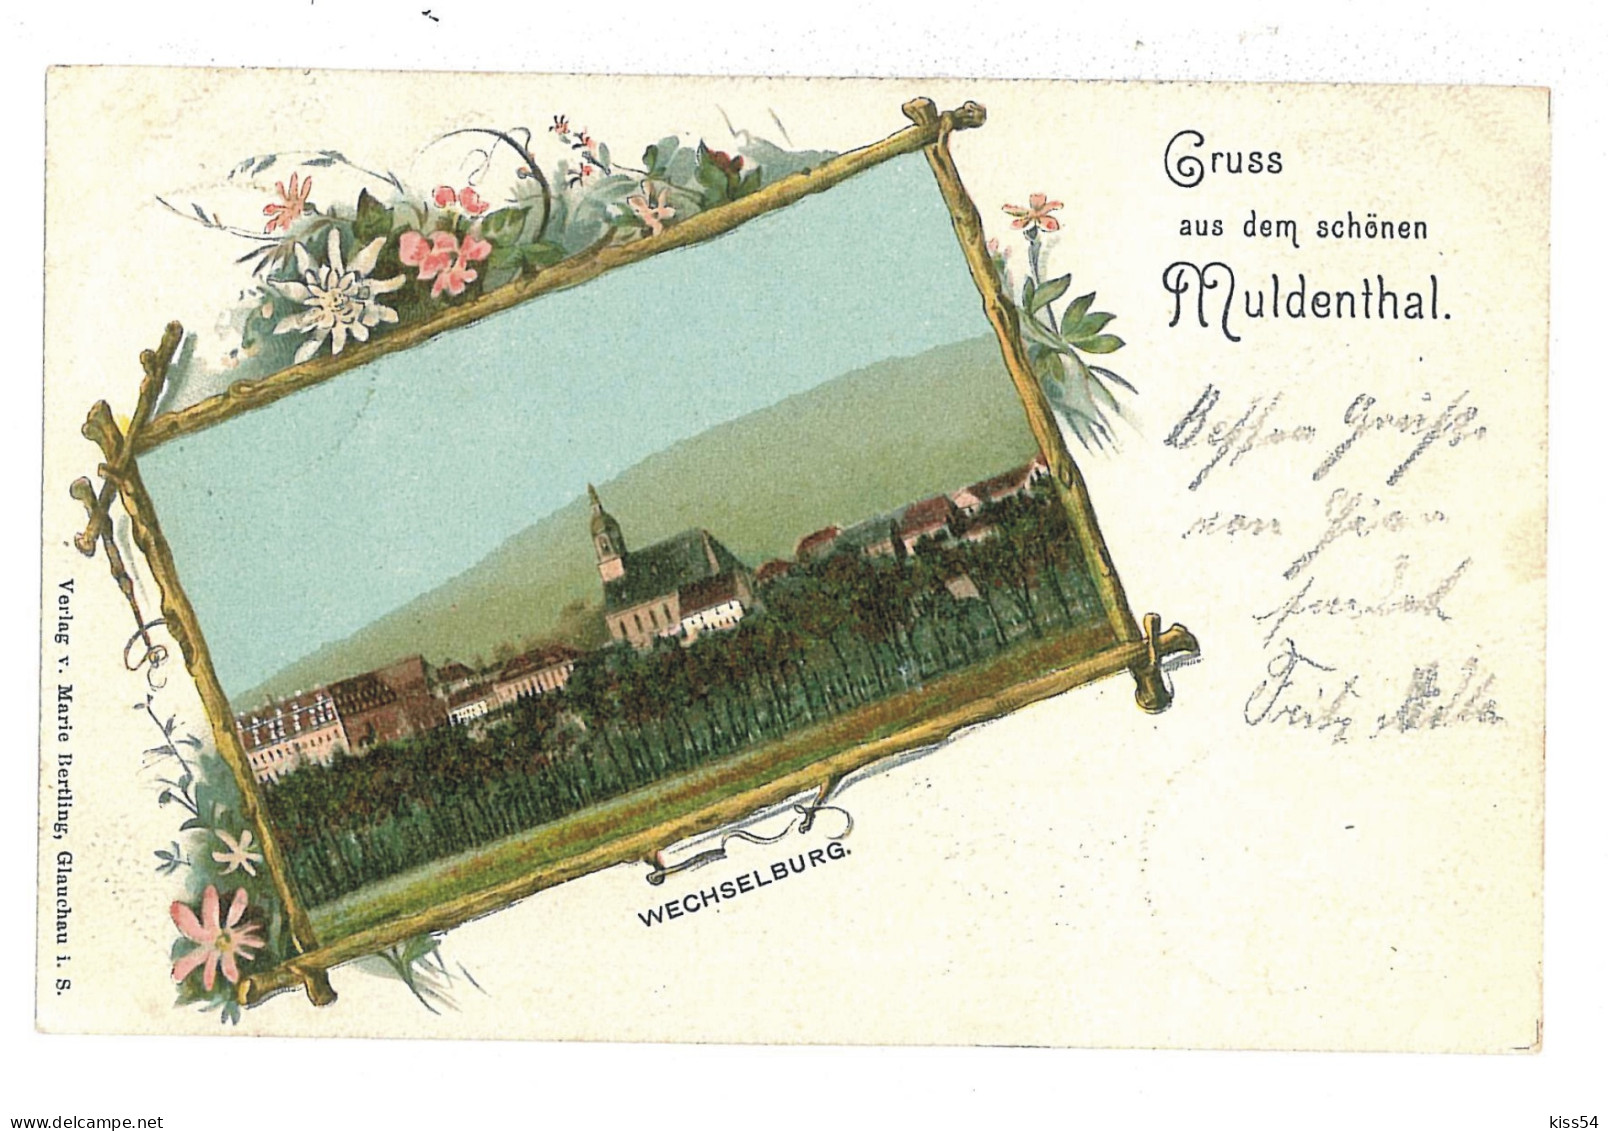 GER 51 - 10169 MULDENTHAL, Litho, Germany - Old Postcard - Used - 1901 - Mulda (Erzgeb.)